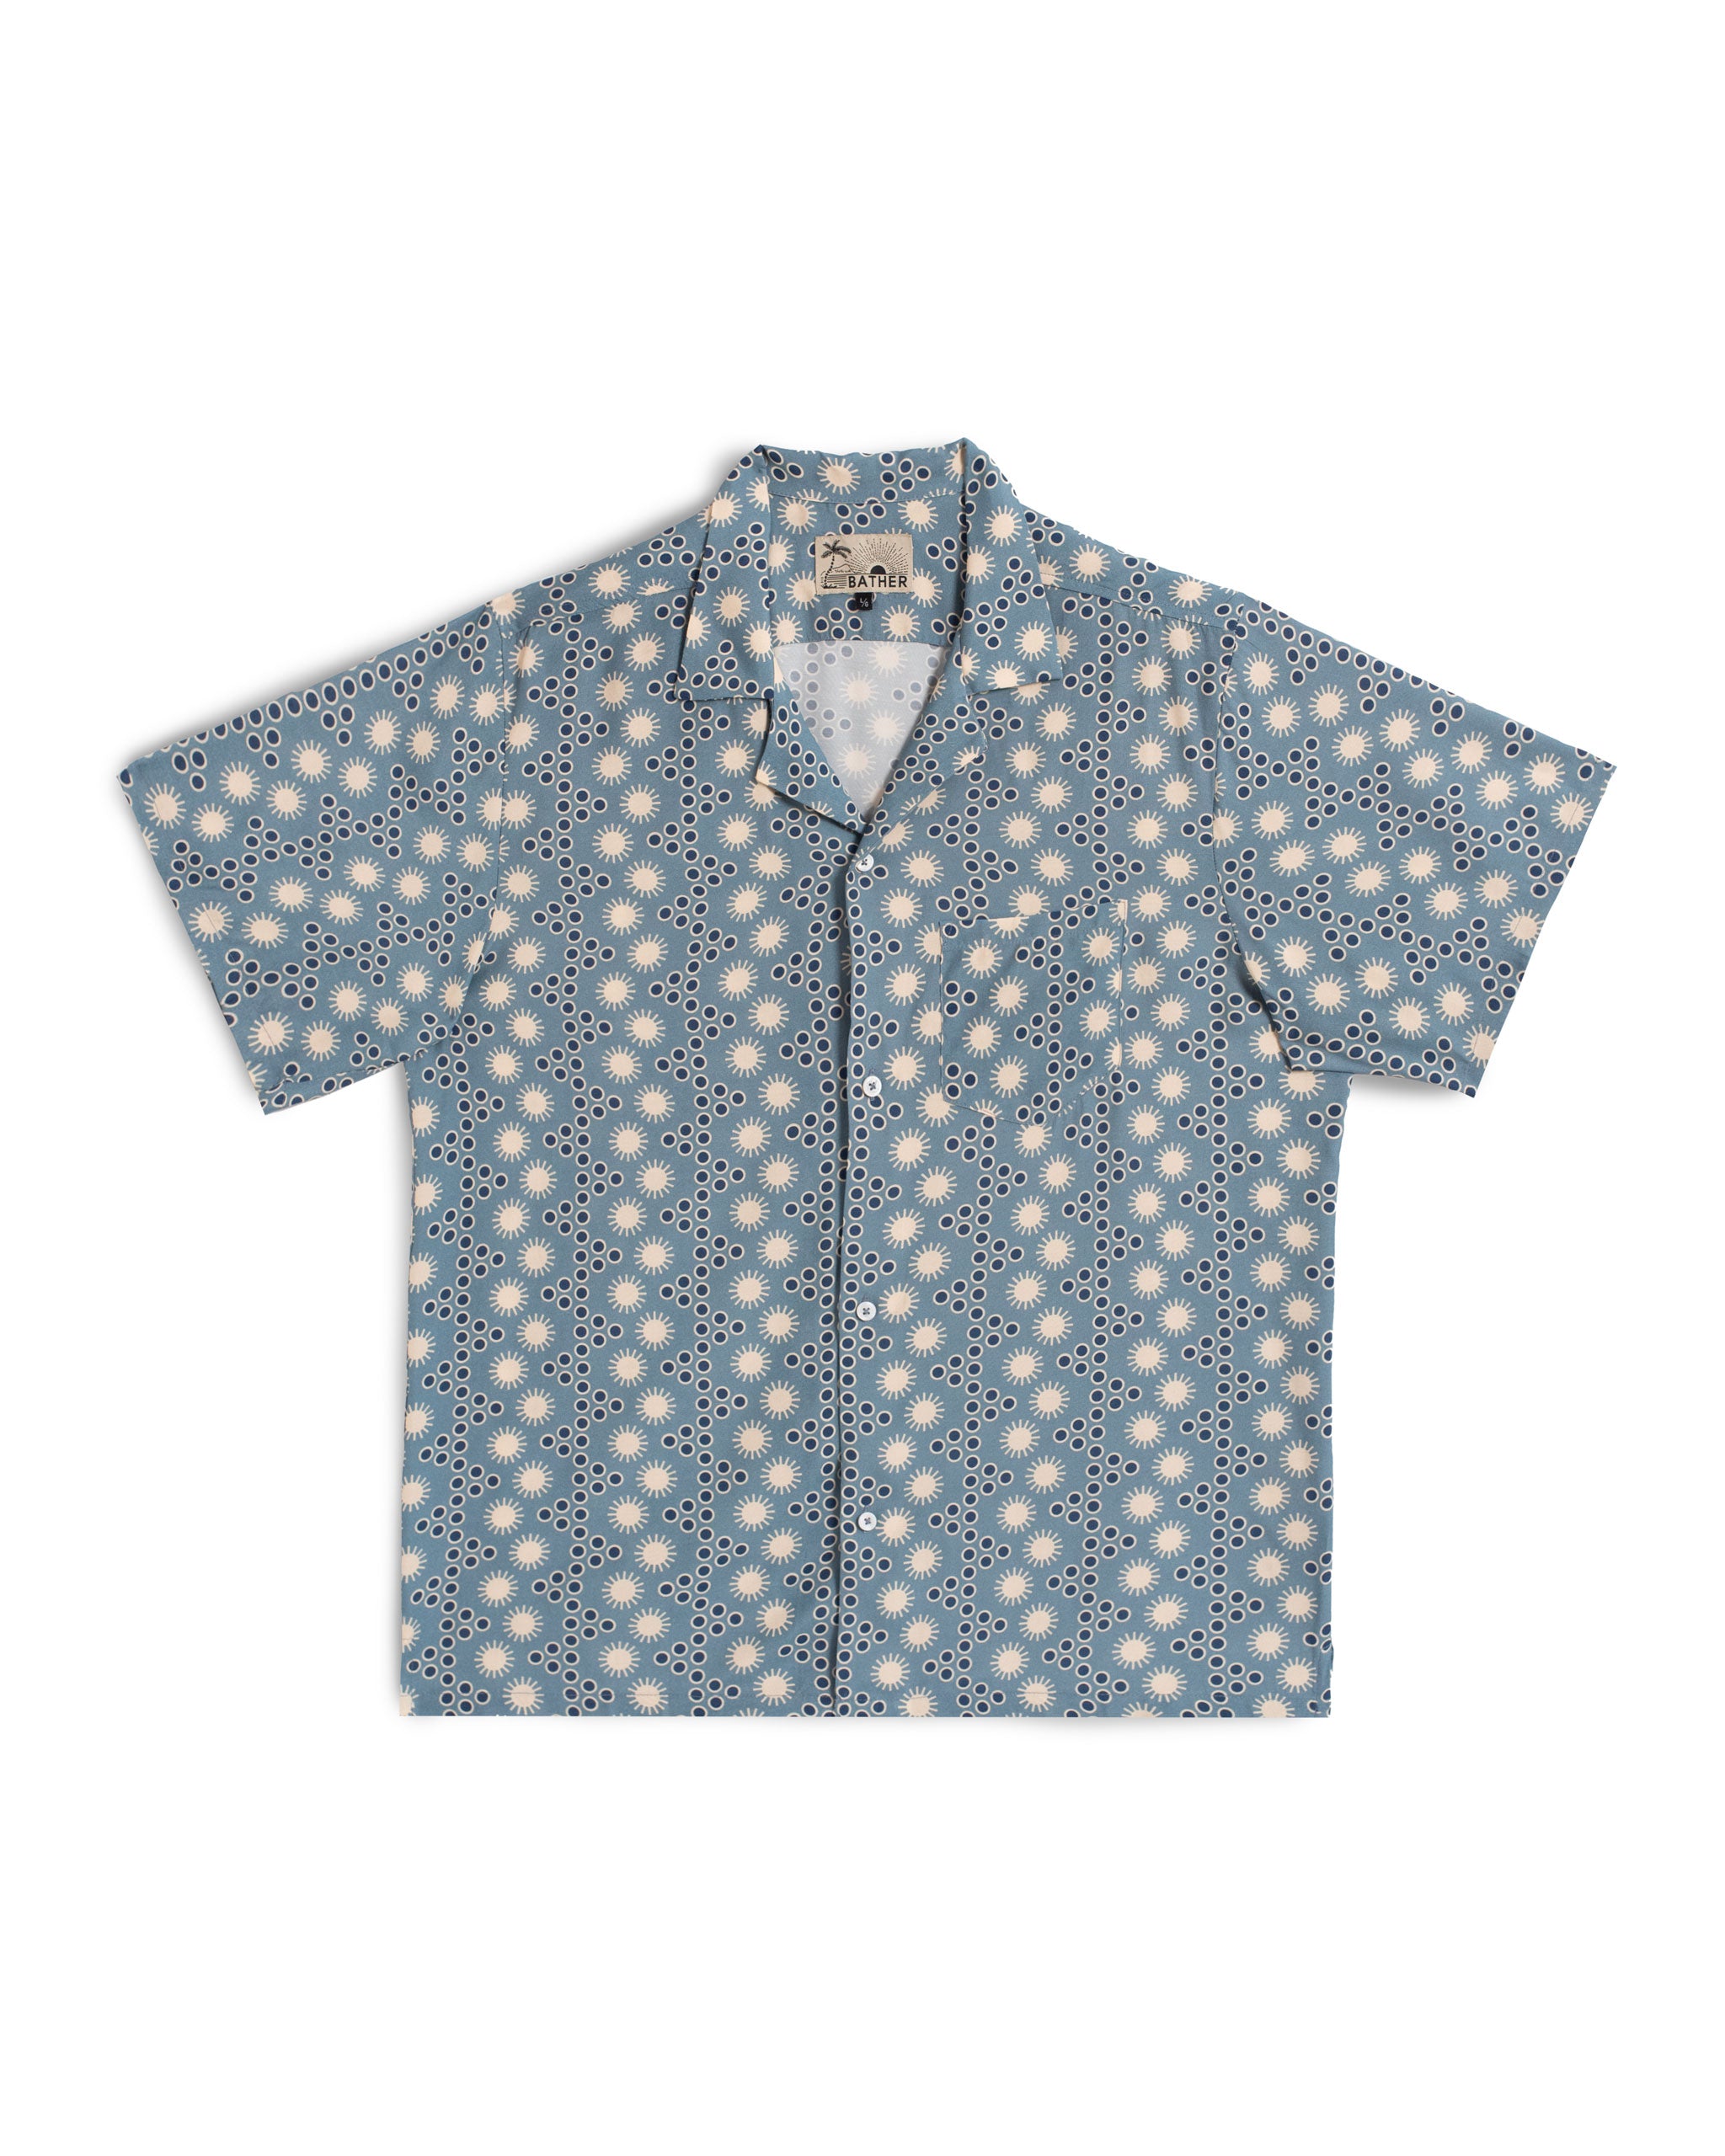 Steel blue disco sun motif all over print camp shirt